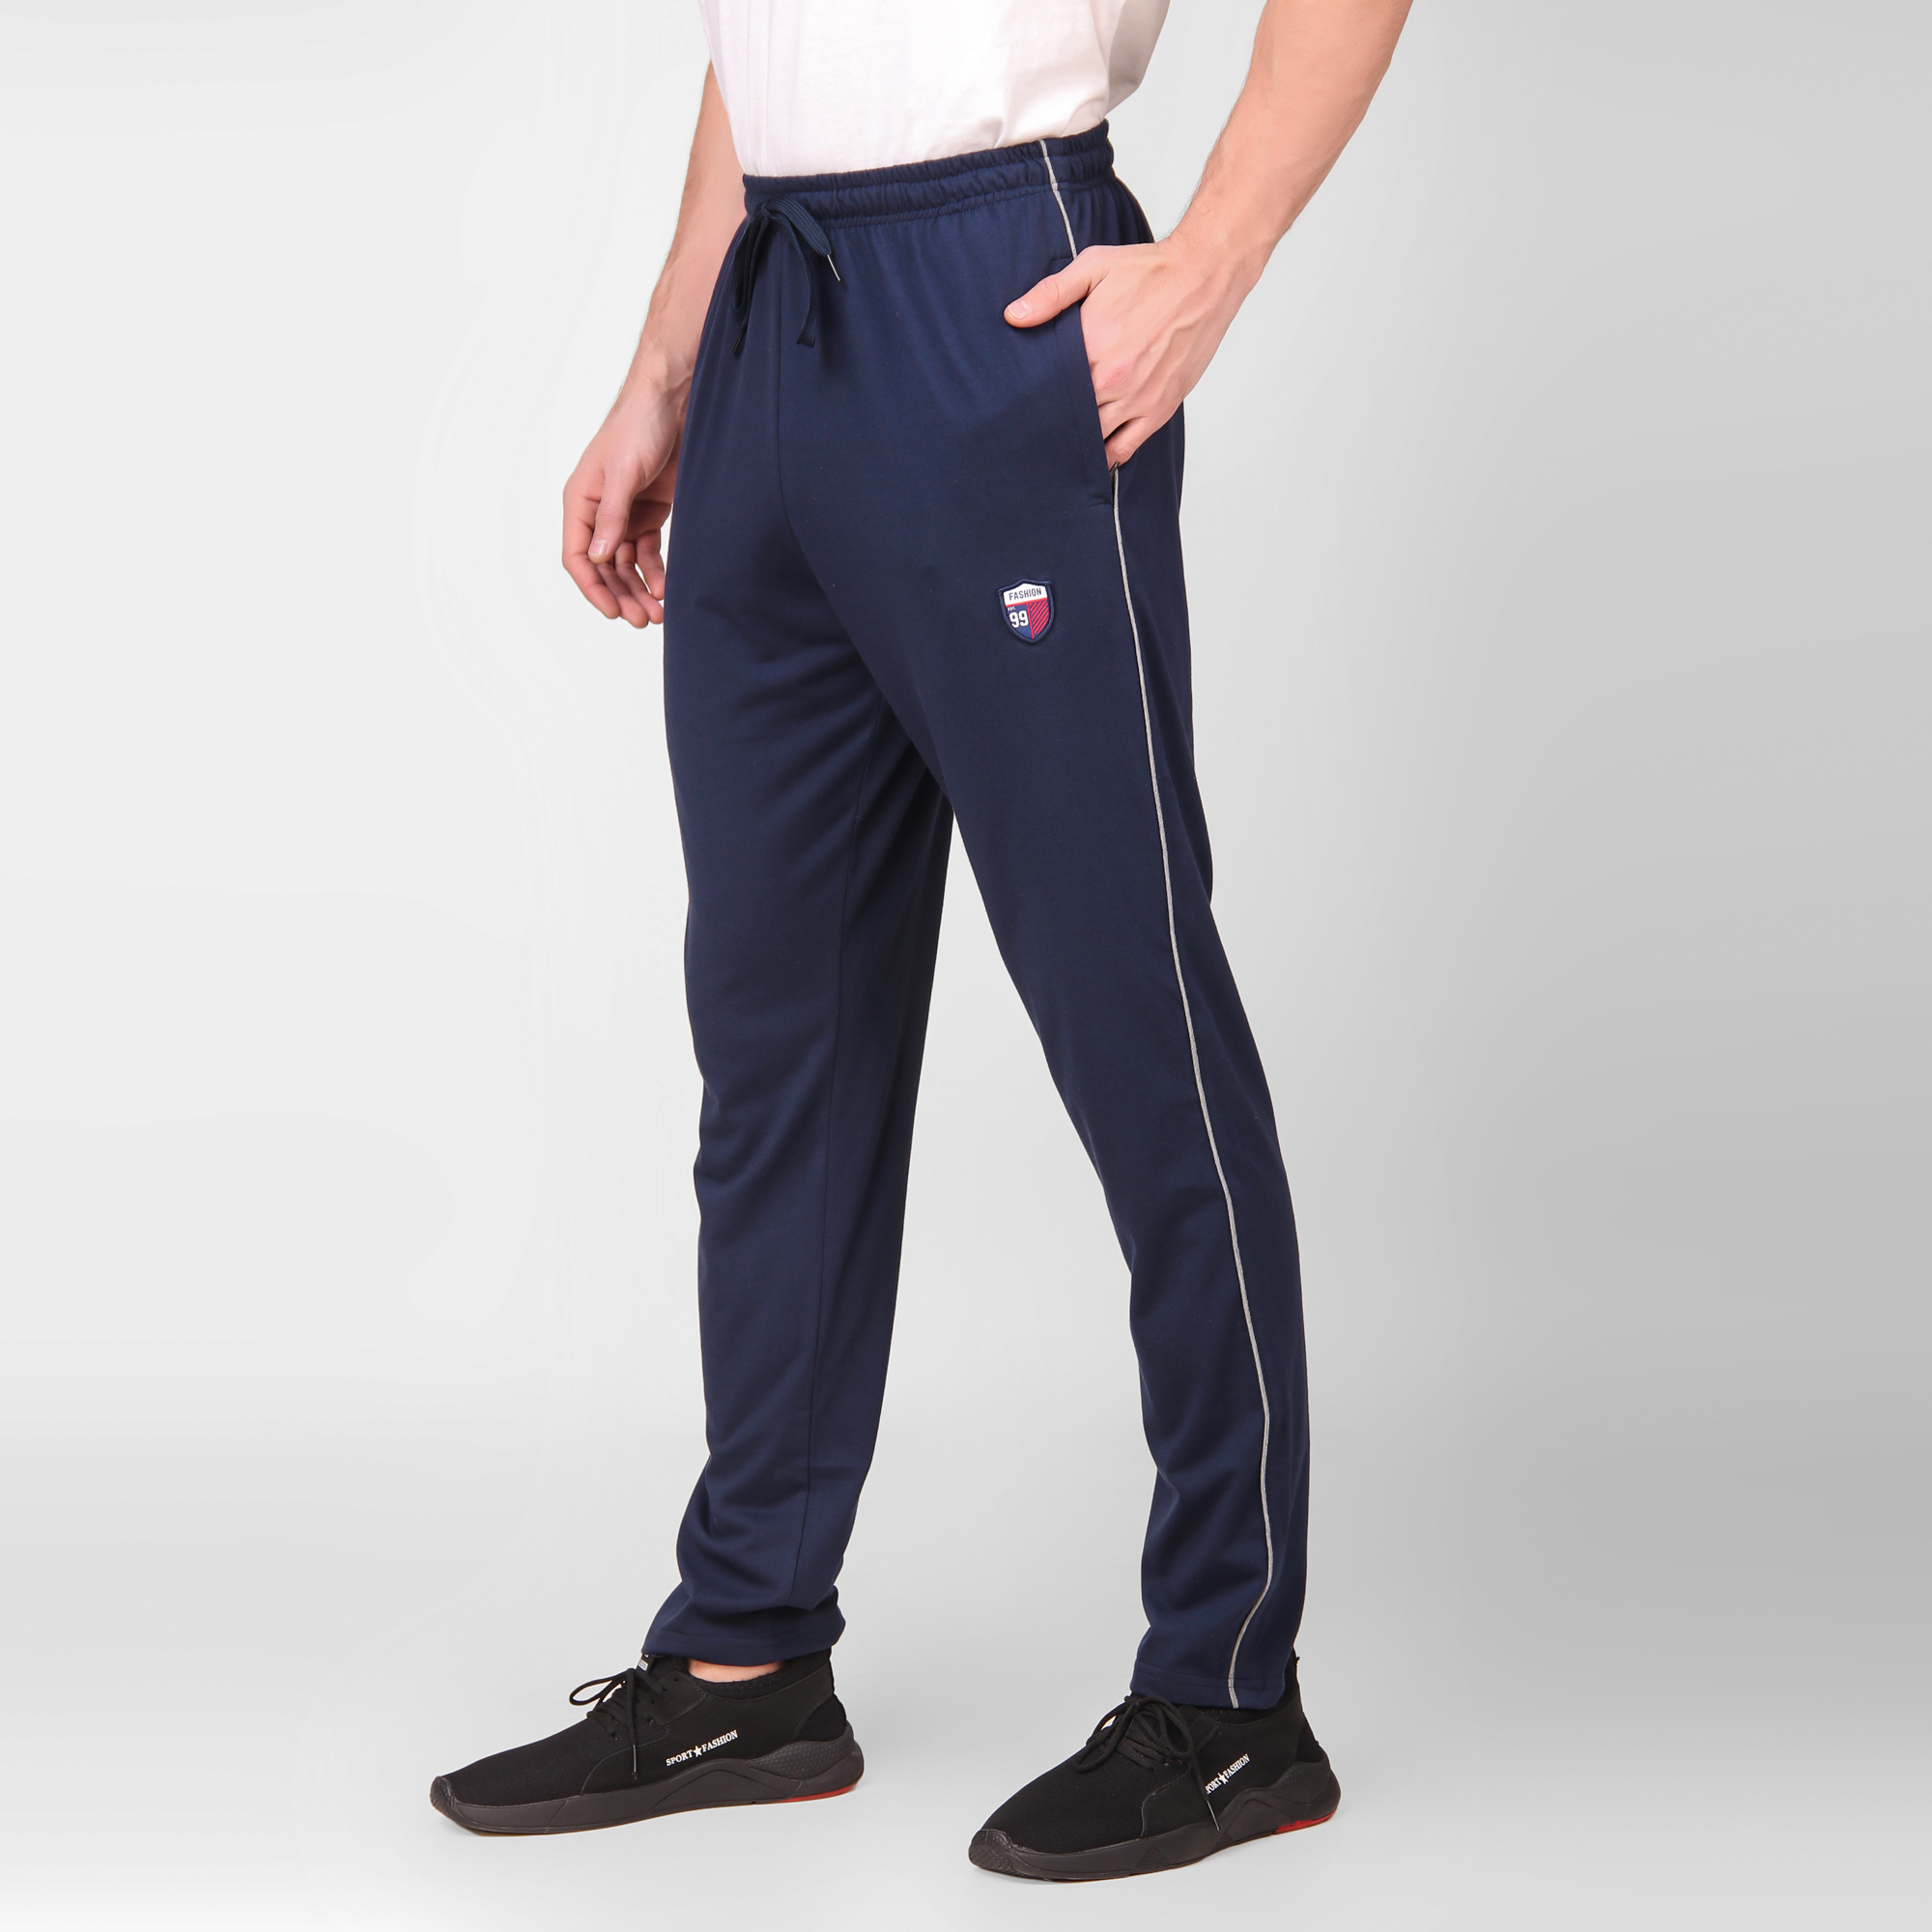 Cotton Track Pants for Men's (Blue)